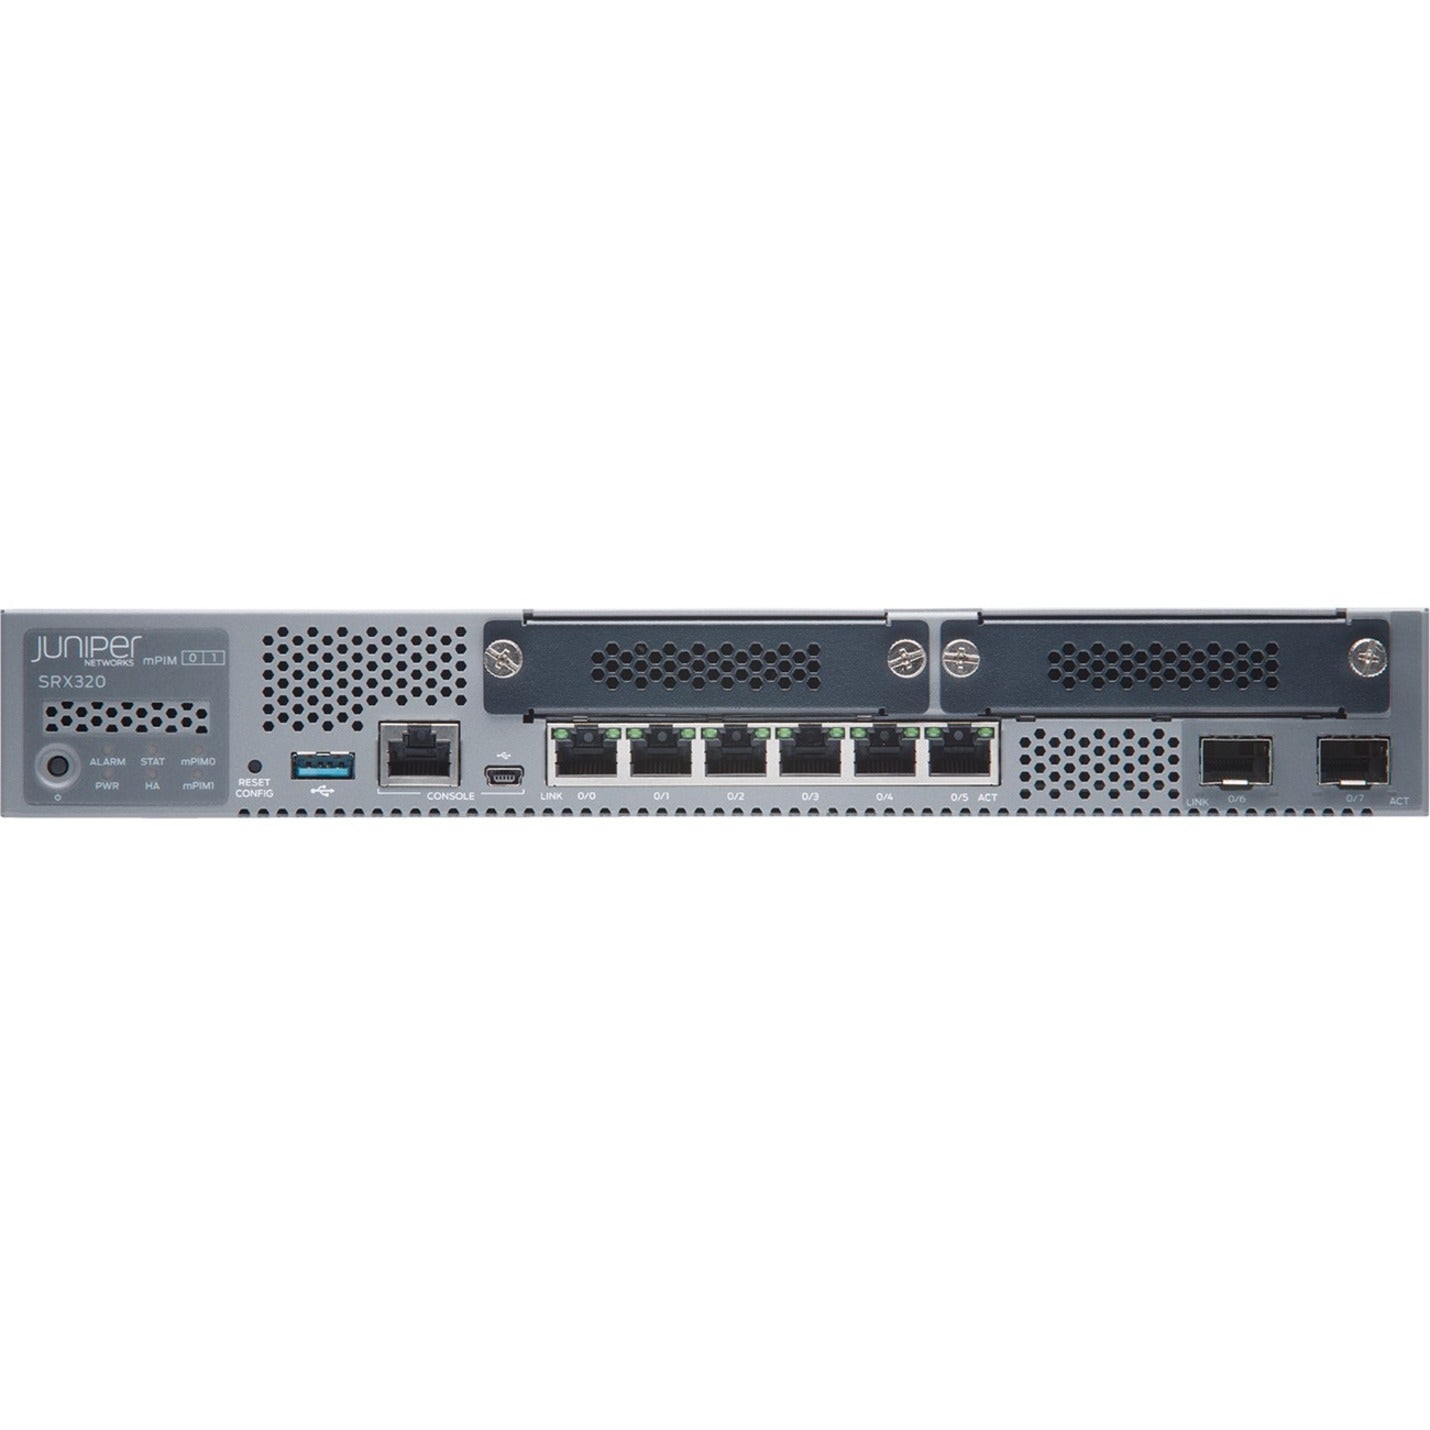 Juniper SRX320 Router, Gigabit Ethernet, 6 Ports, 1000Base-T, 1000Base-X